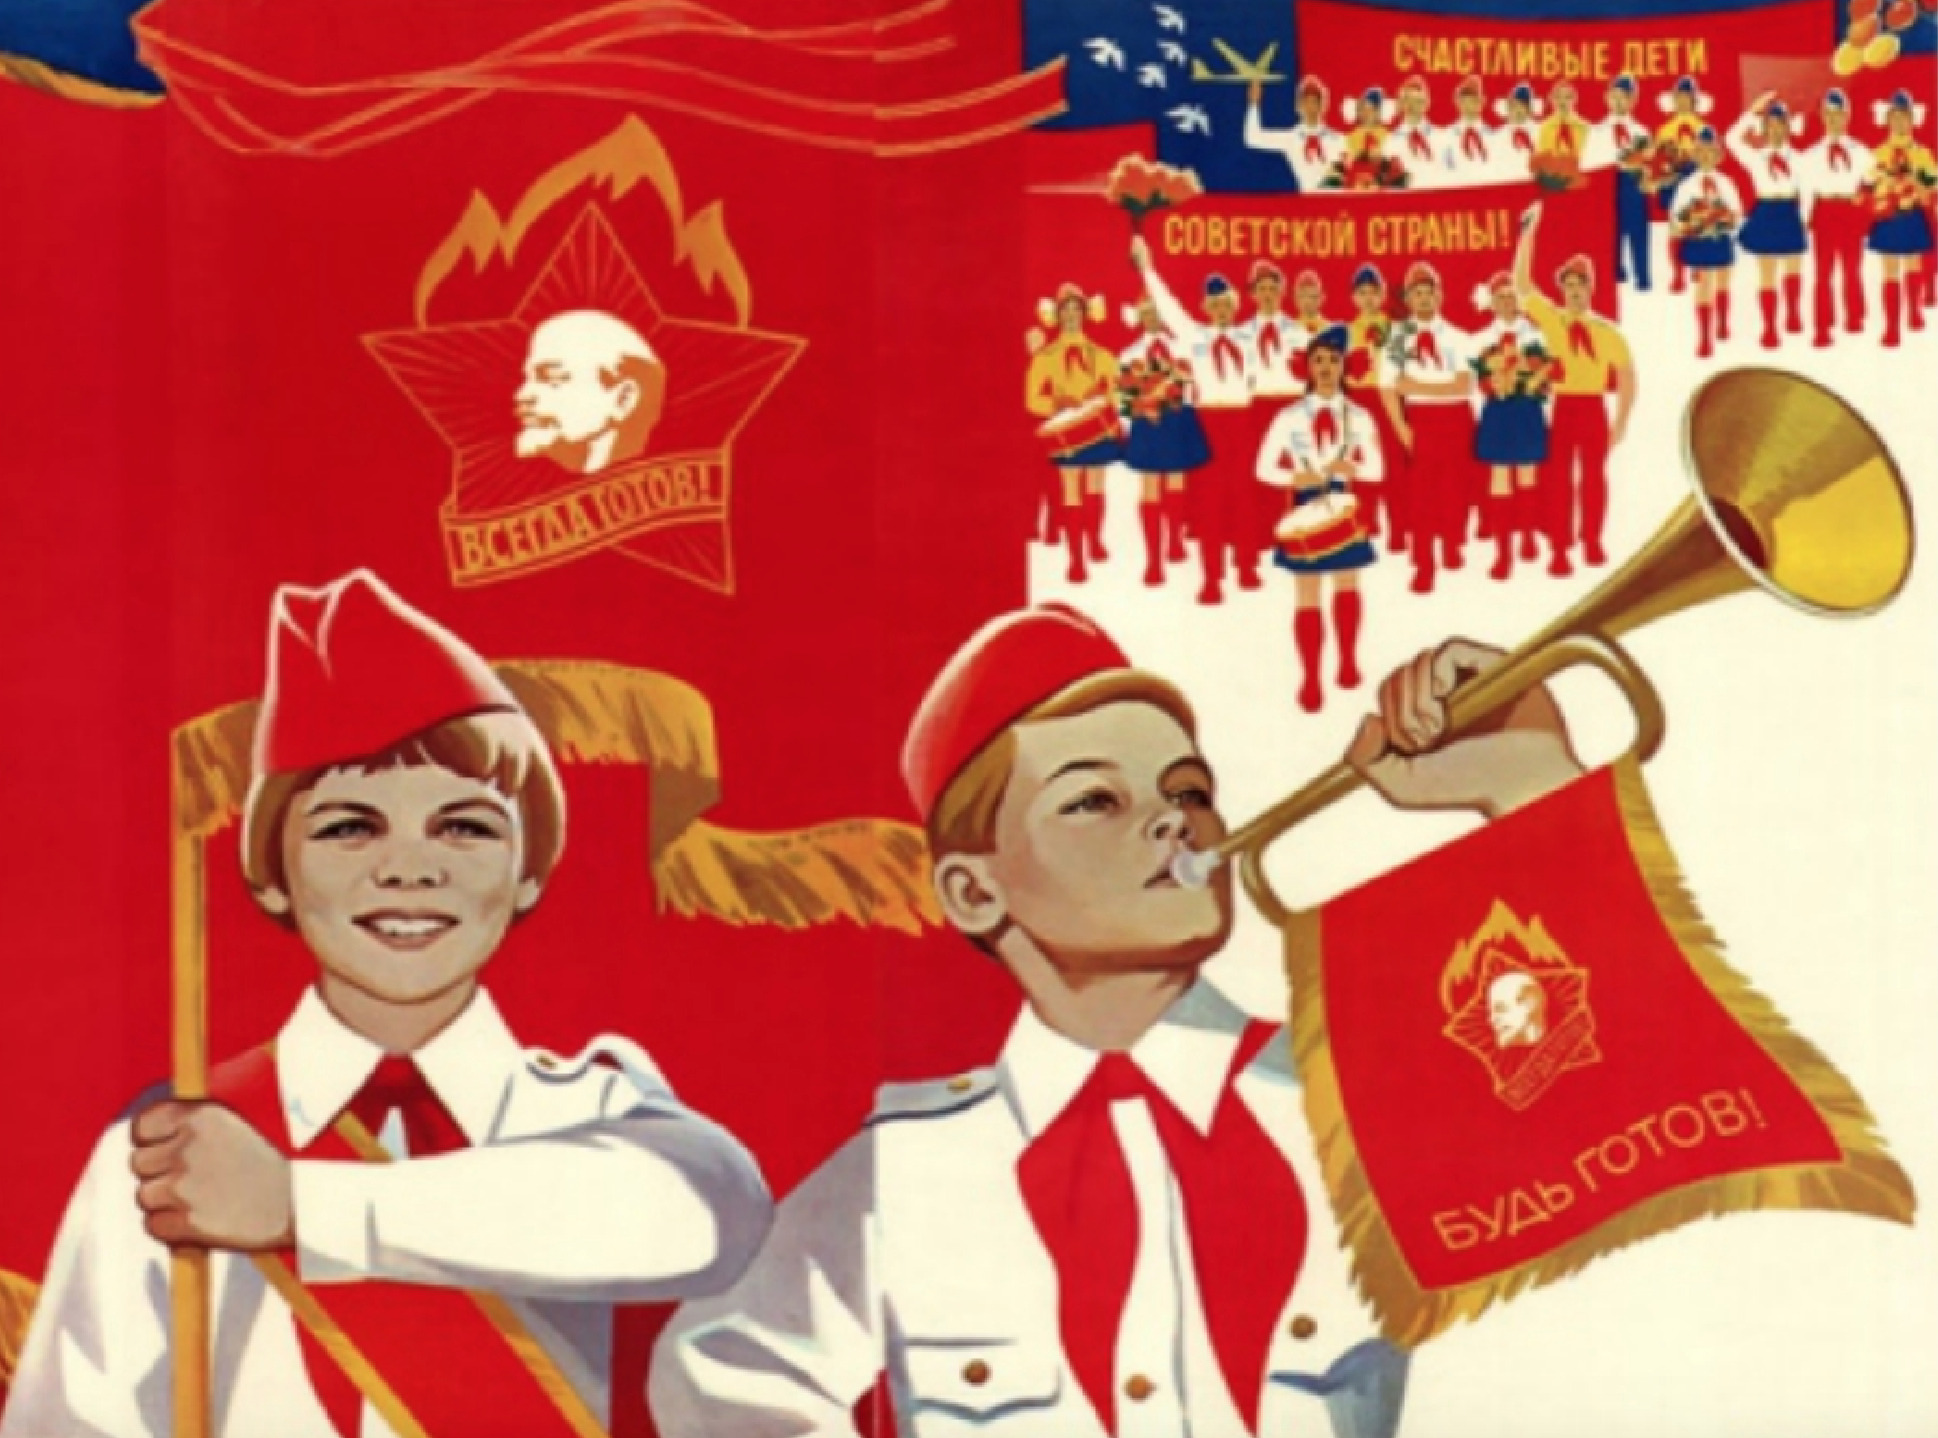 ОРГАНИЗУЕМ МЕРОПРИЯТИЯ В СТИЛЕ SSSR-PARTY! #Moskva